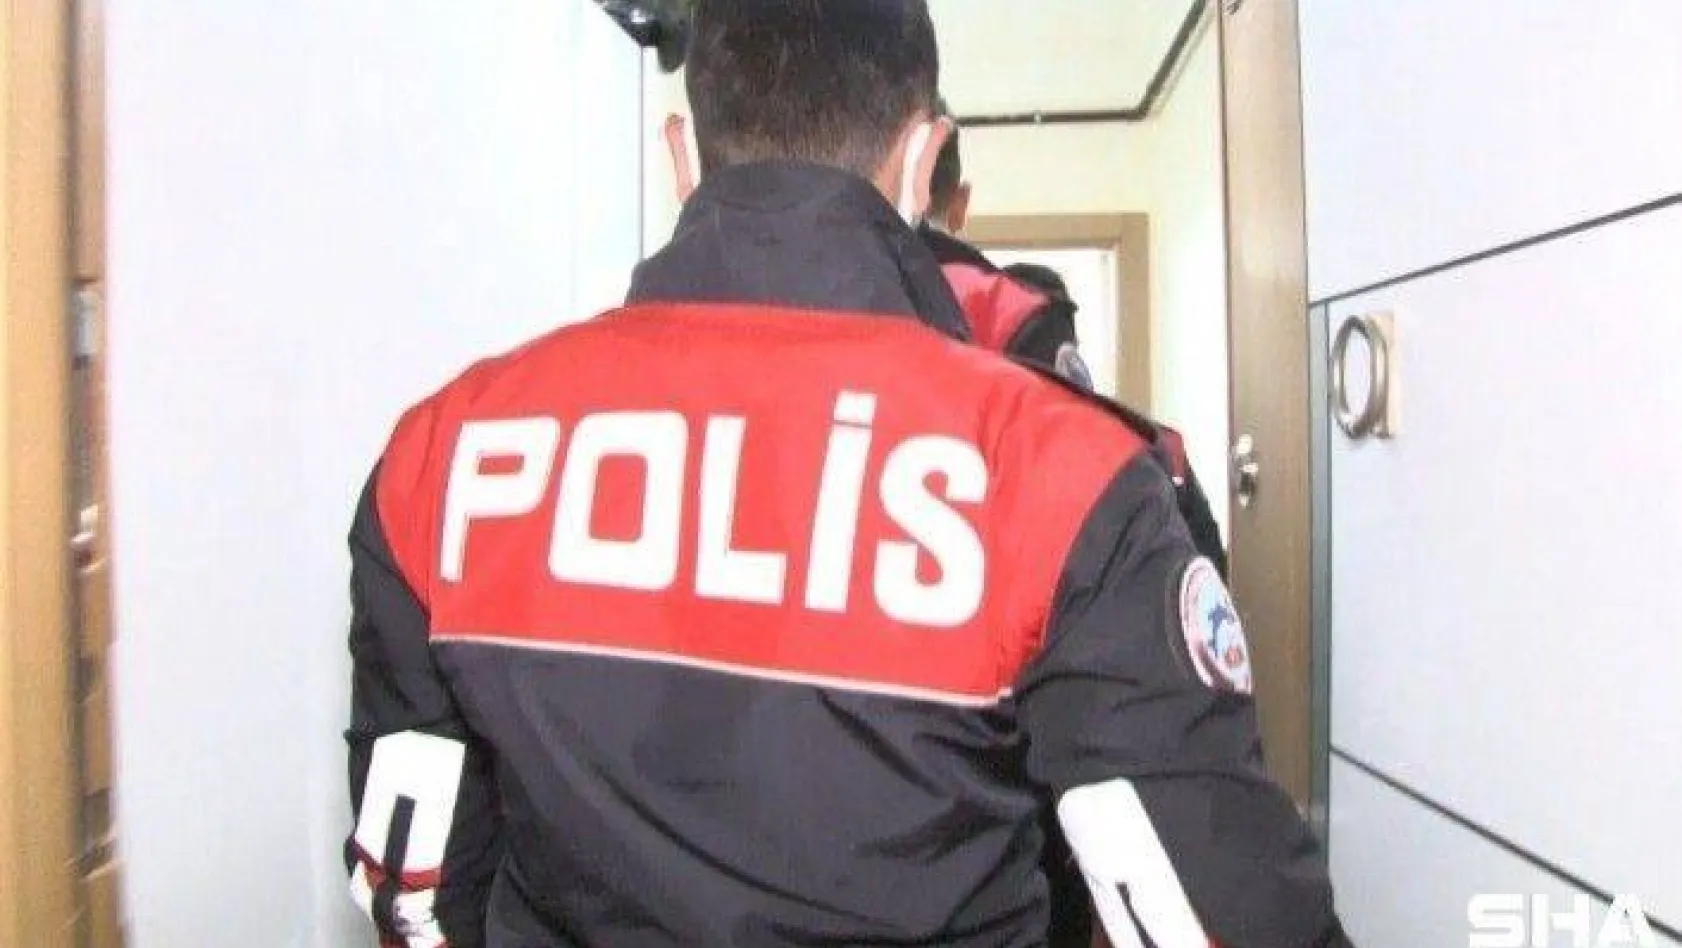 İstanbul'da kaçak nargile tütünü operasyonu